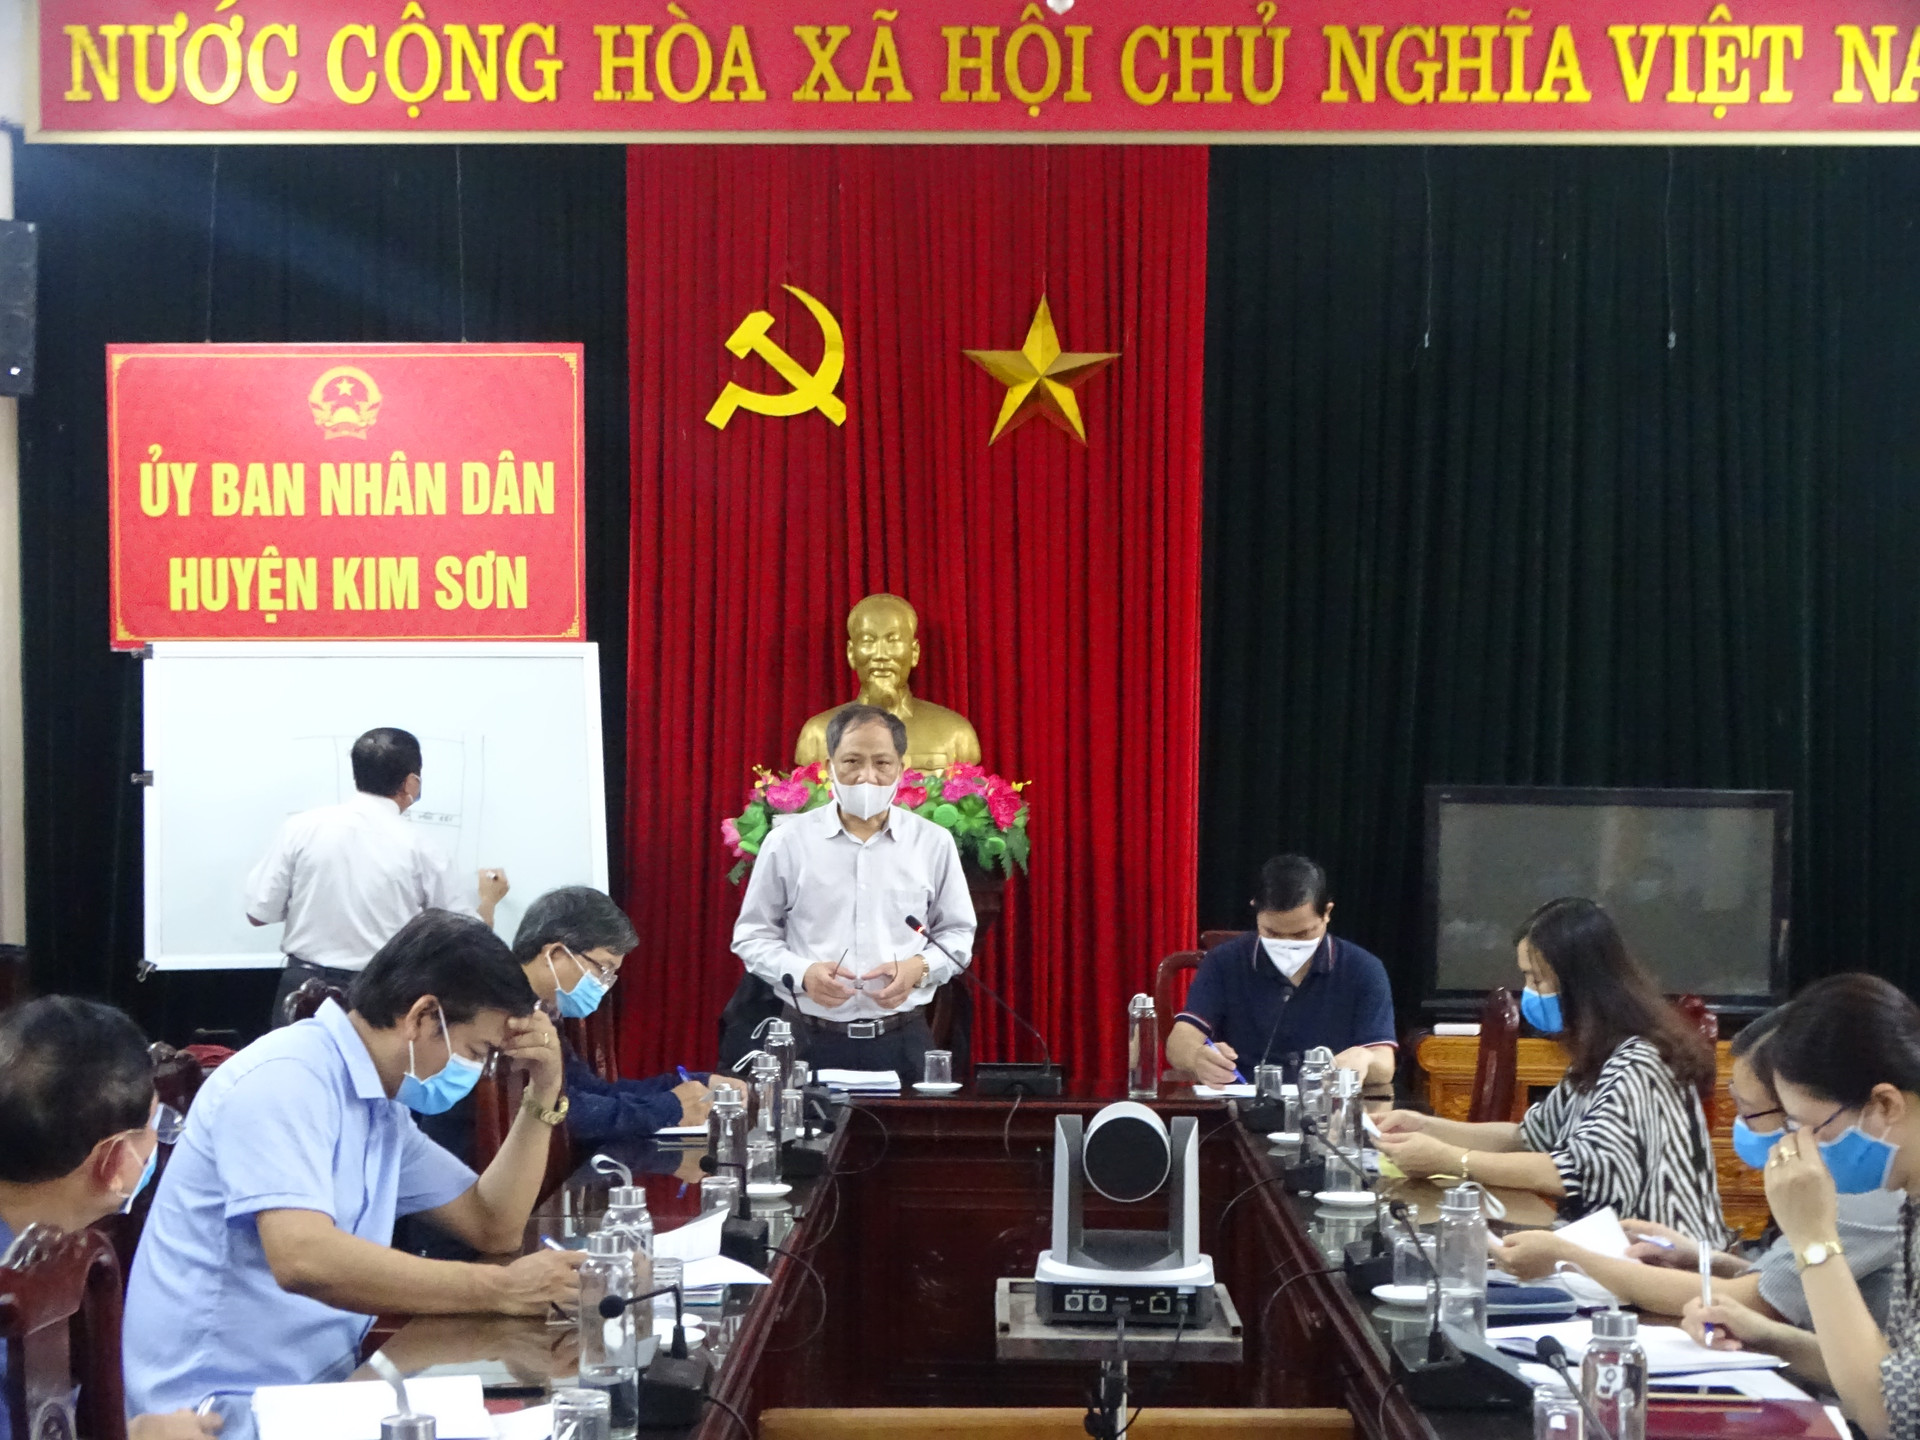 Ông Đỗ Hùng Sơn - Chủ tịch UBND huyện Kim Sơn, tỉnh Ninh Bình tại buổi họp Ban chỉ đạo phòng, chống dịch Covid-19 của huyện